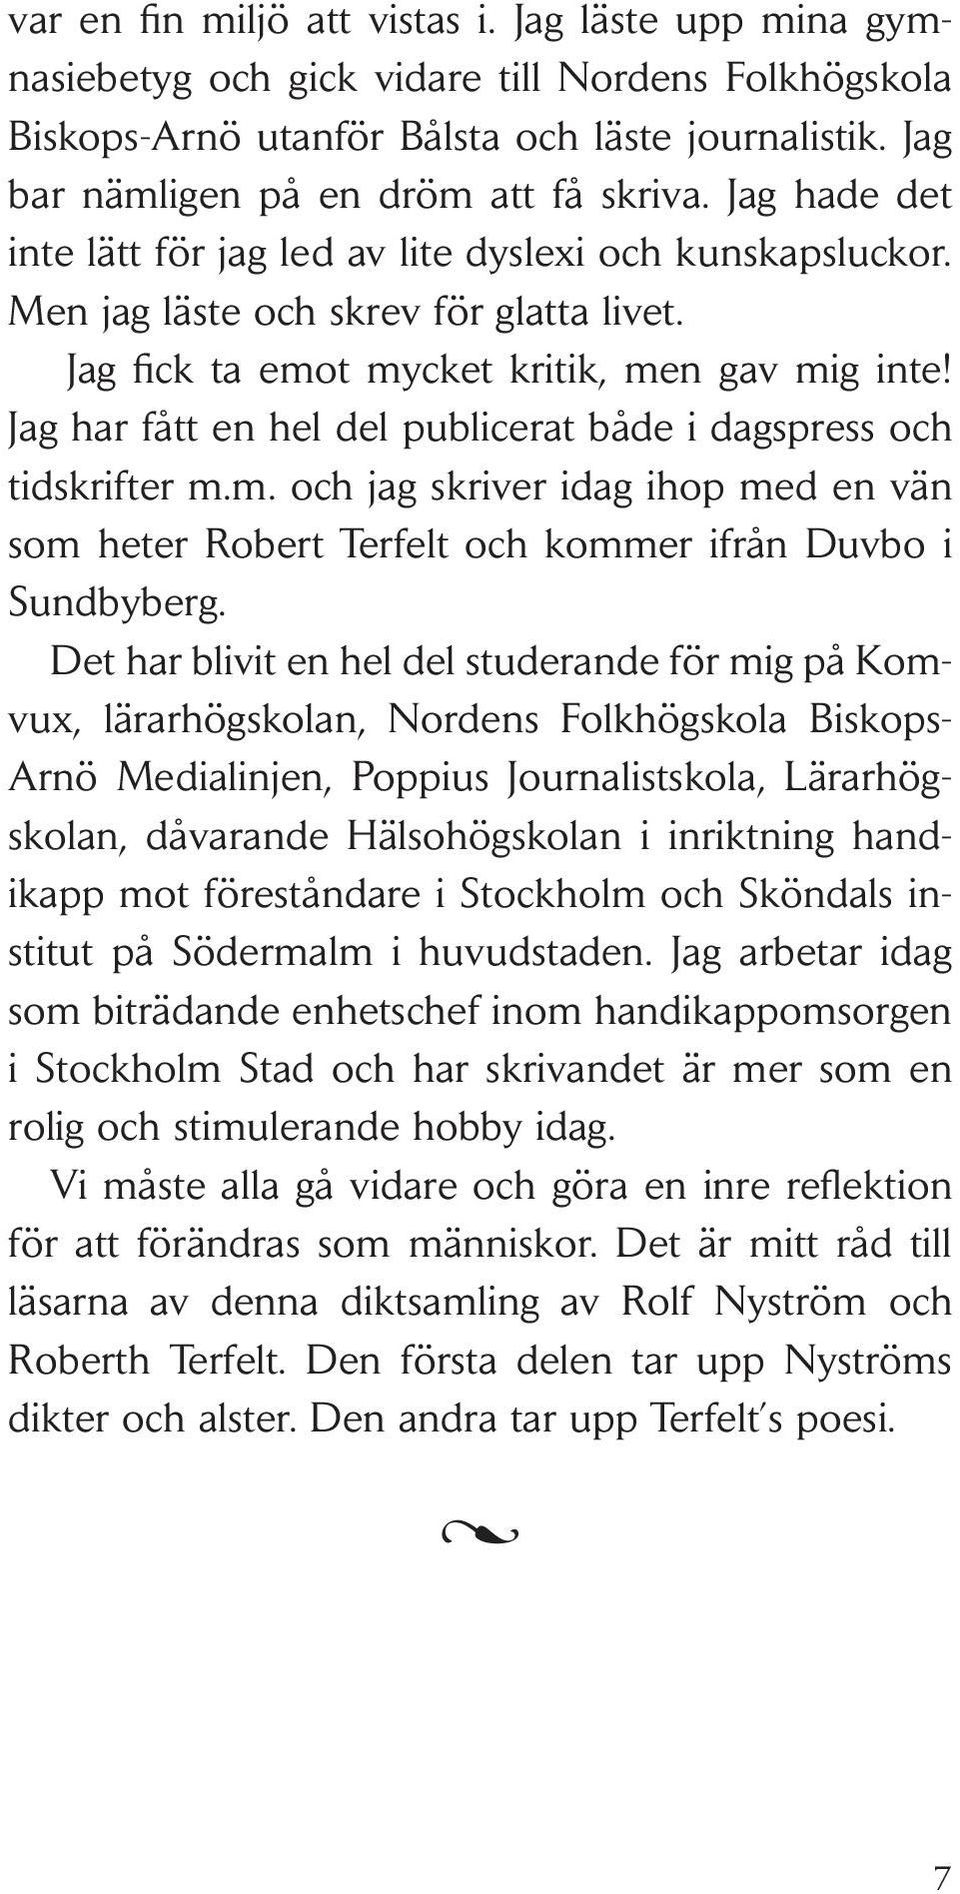 Jag har fått en hel del publicerat både i dagspress och tidskrifter m.m. och jag skriver idag ihop med en vän som heter Robert Terfelt och kommer ifrån Duvbo i Sundbyberg.